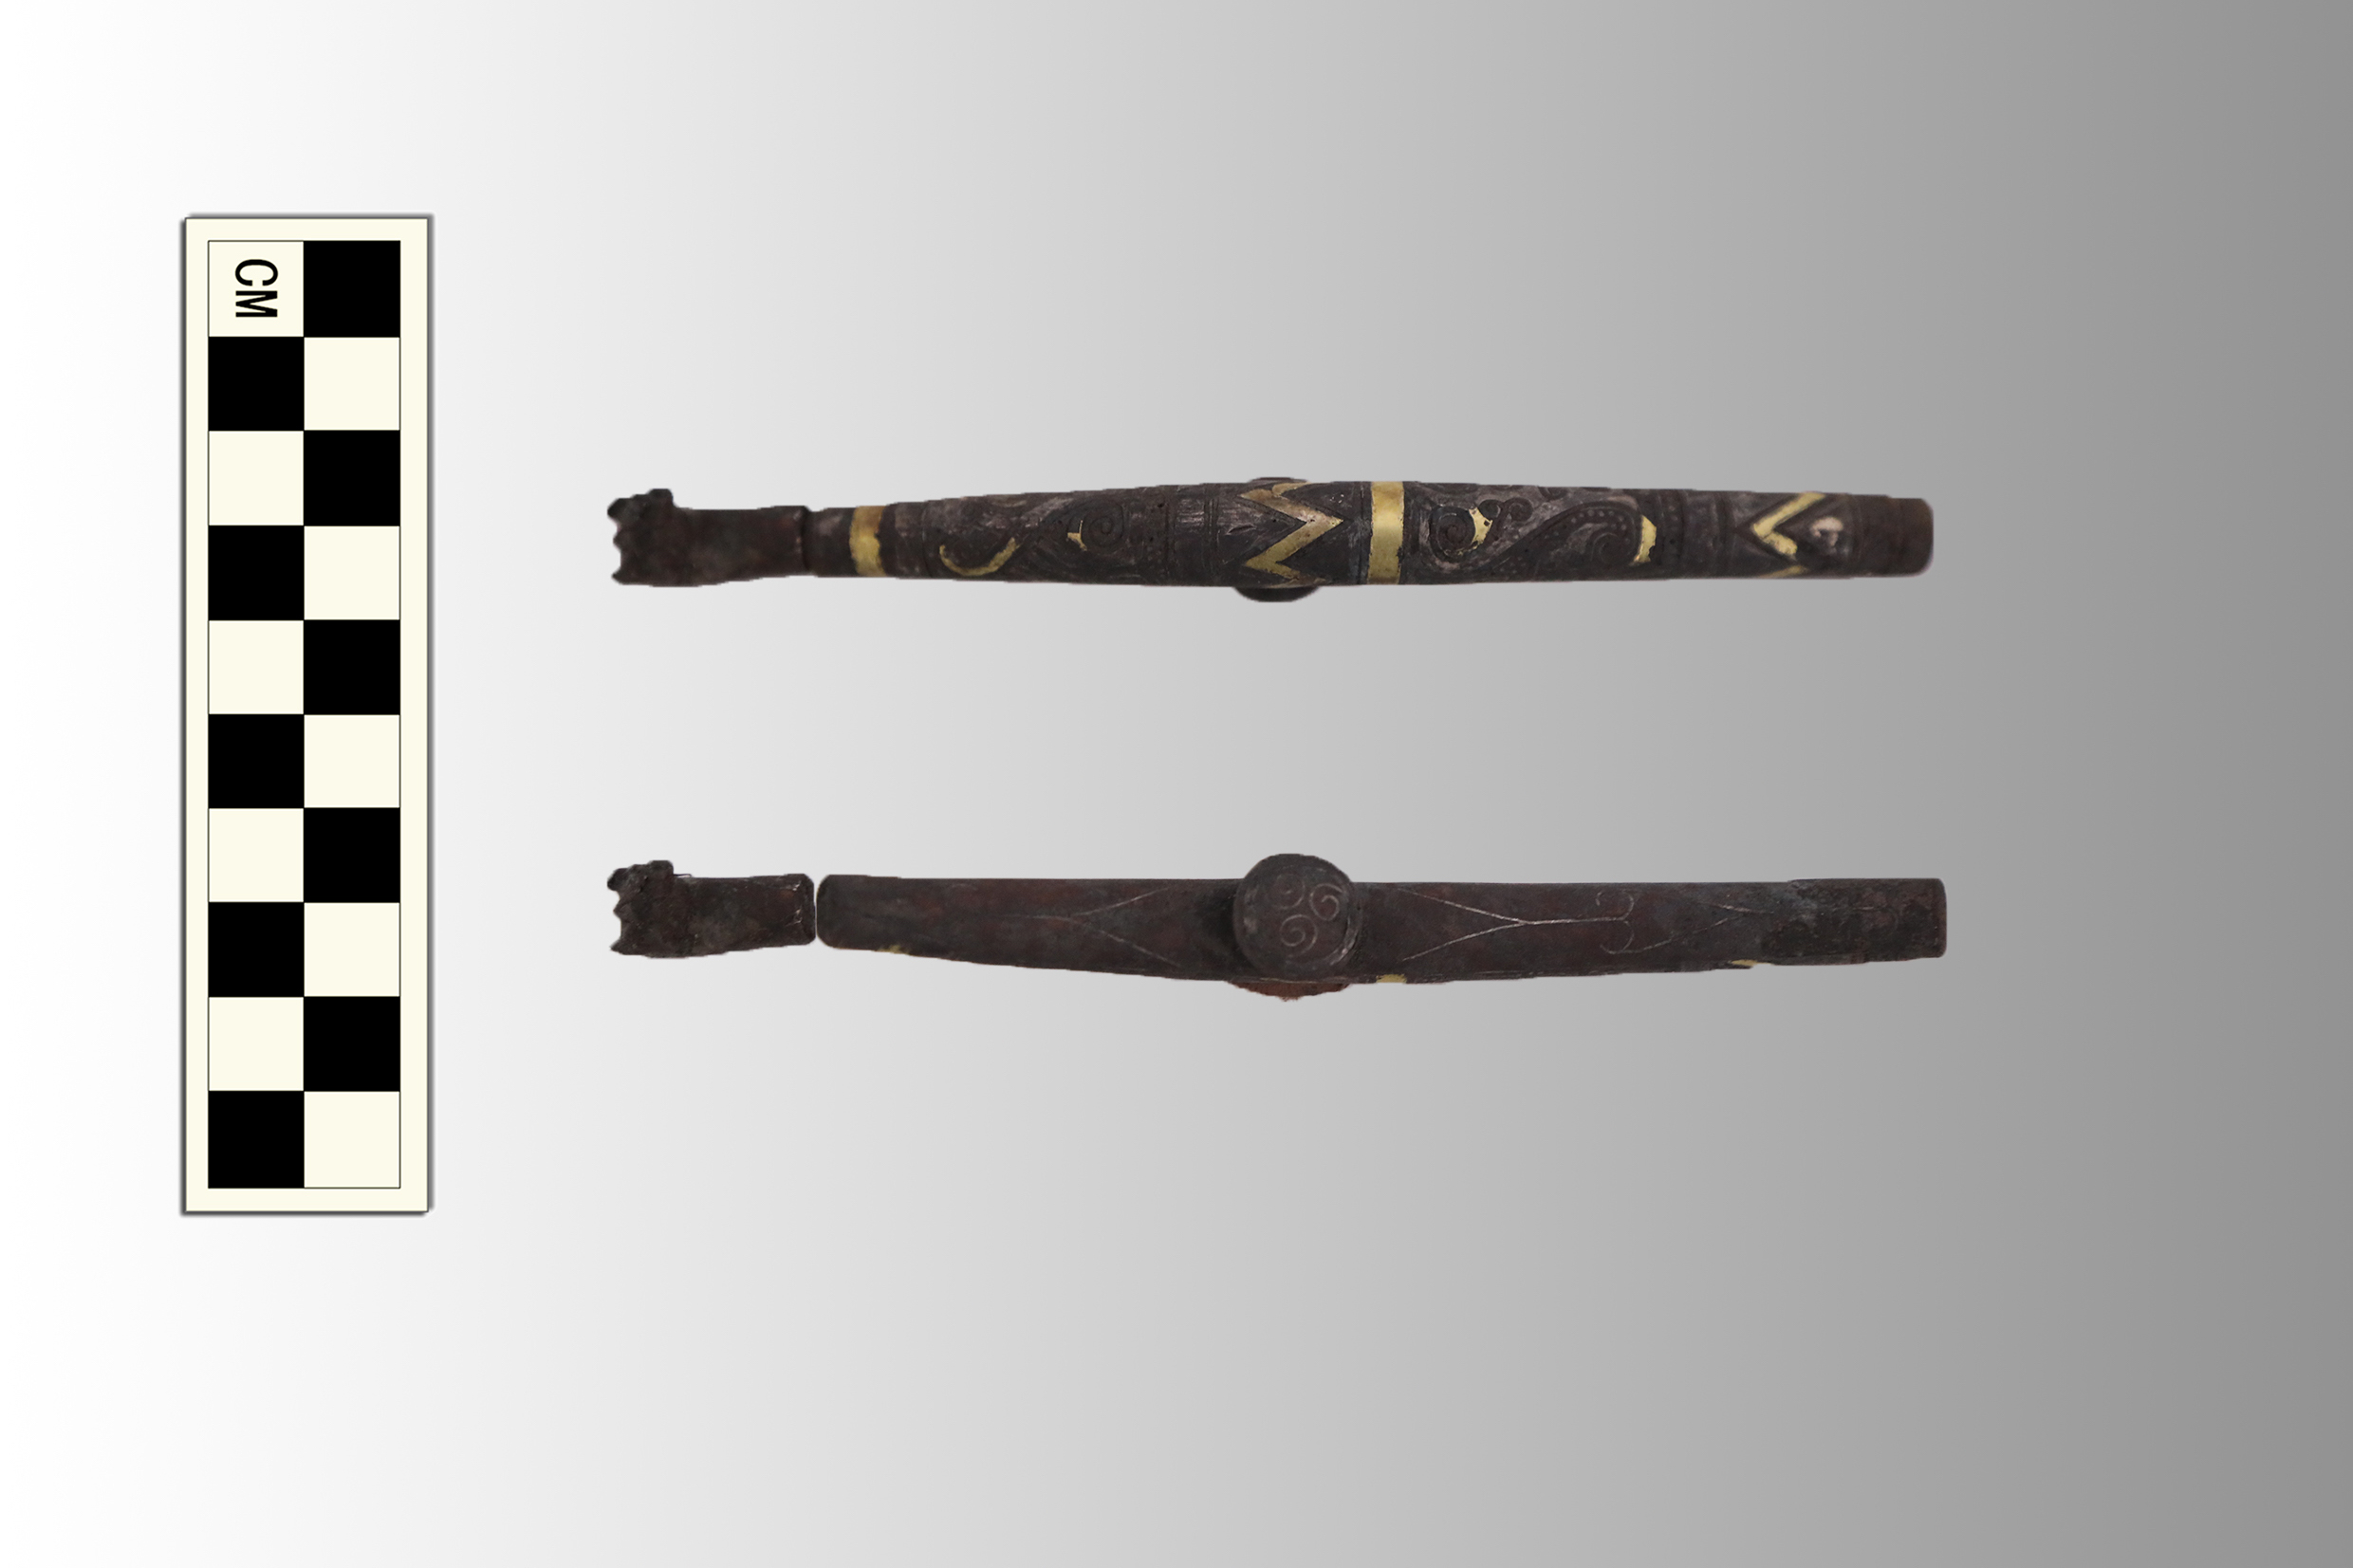 นักโบราณคดีจีนขุดพบหลุมศพคูน้ำล้อม อายุกว่า 2,000 ปี ในมองโกเลียใน